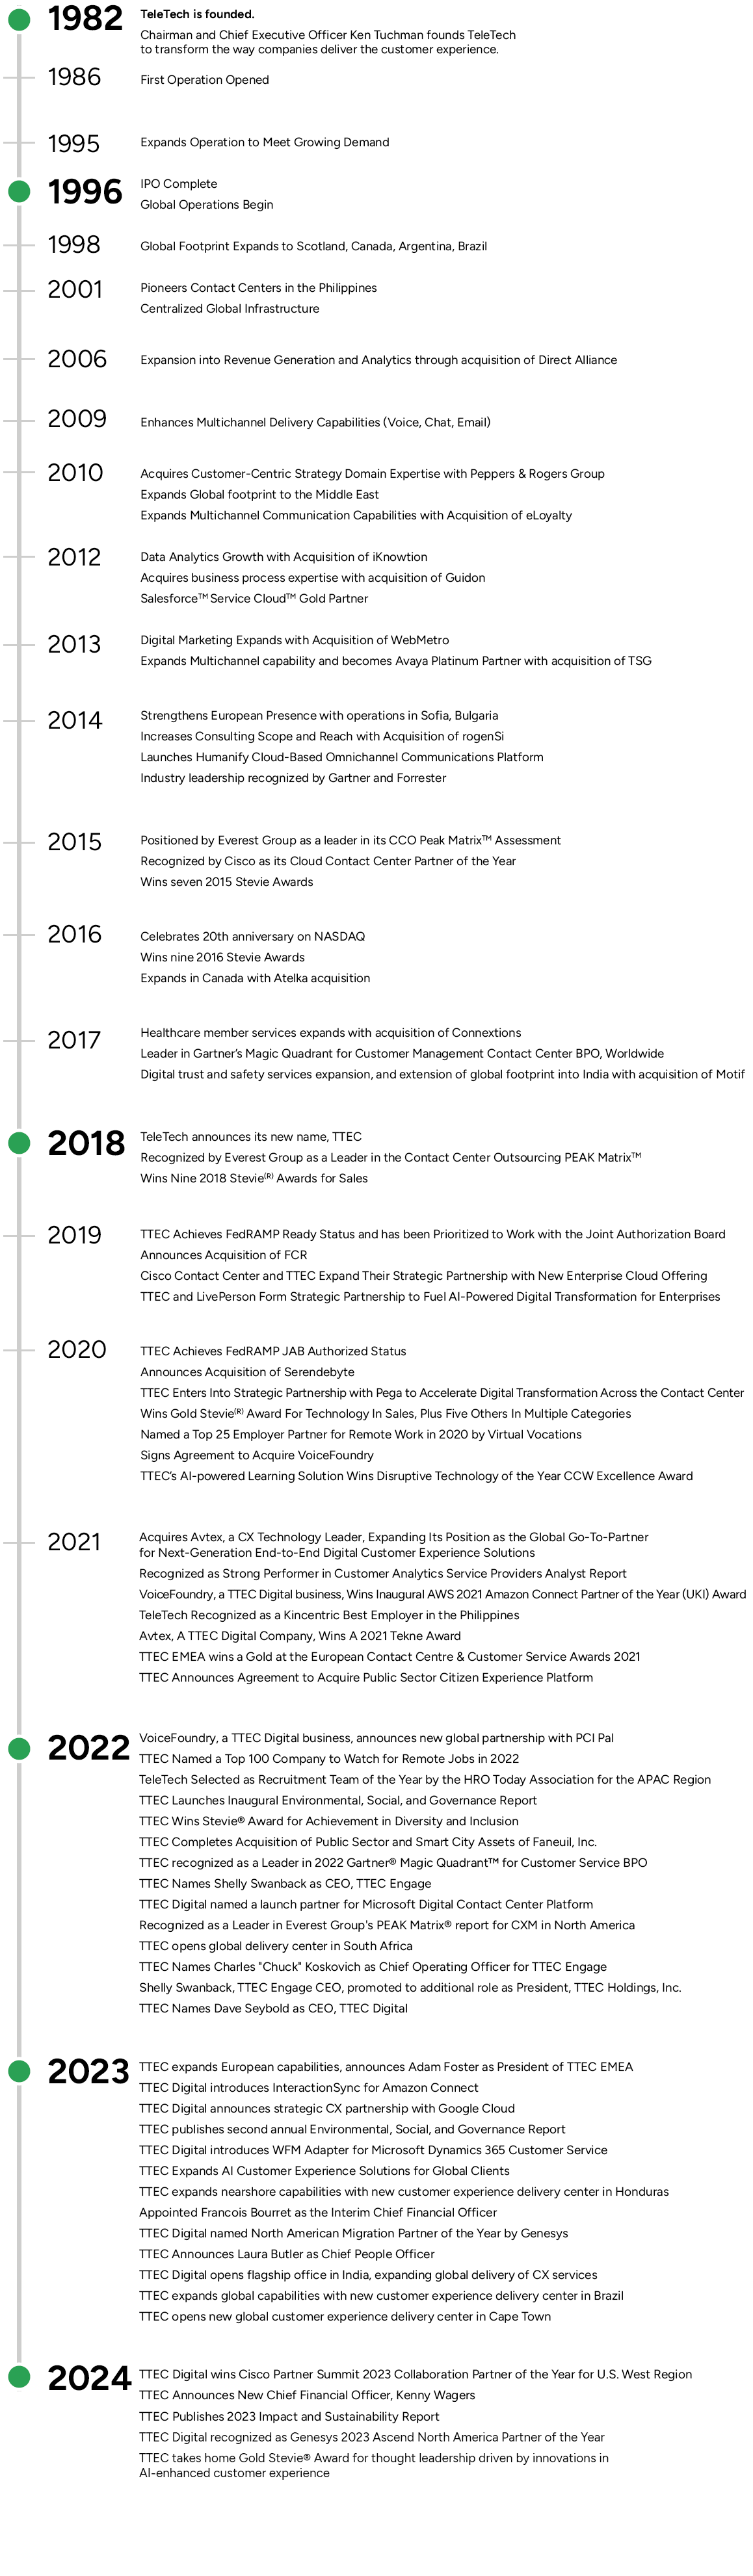 TTEC Timeline